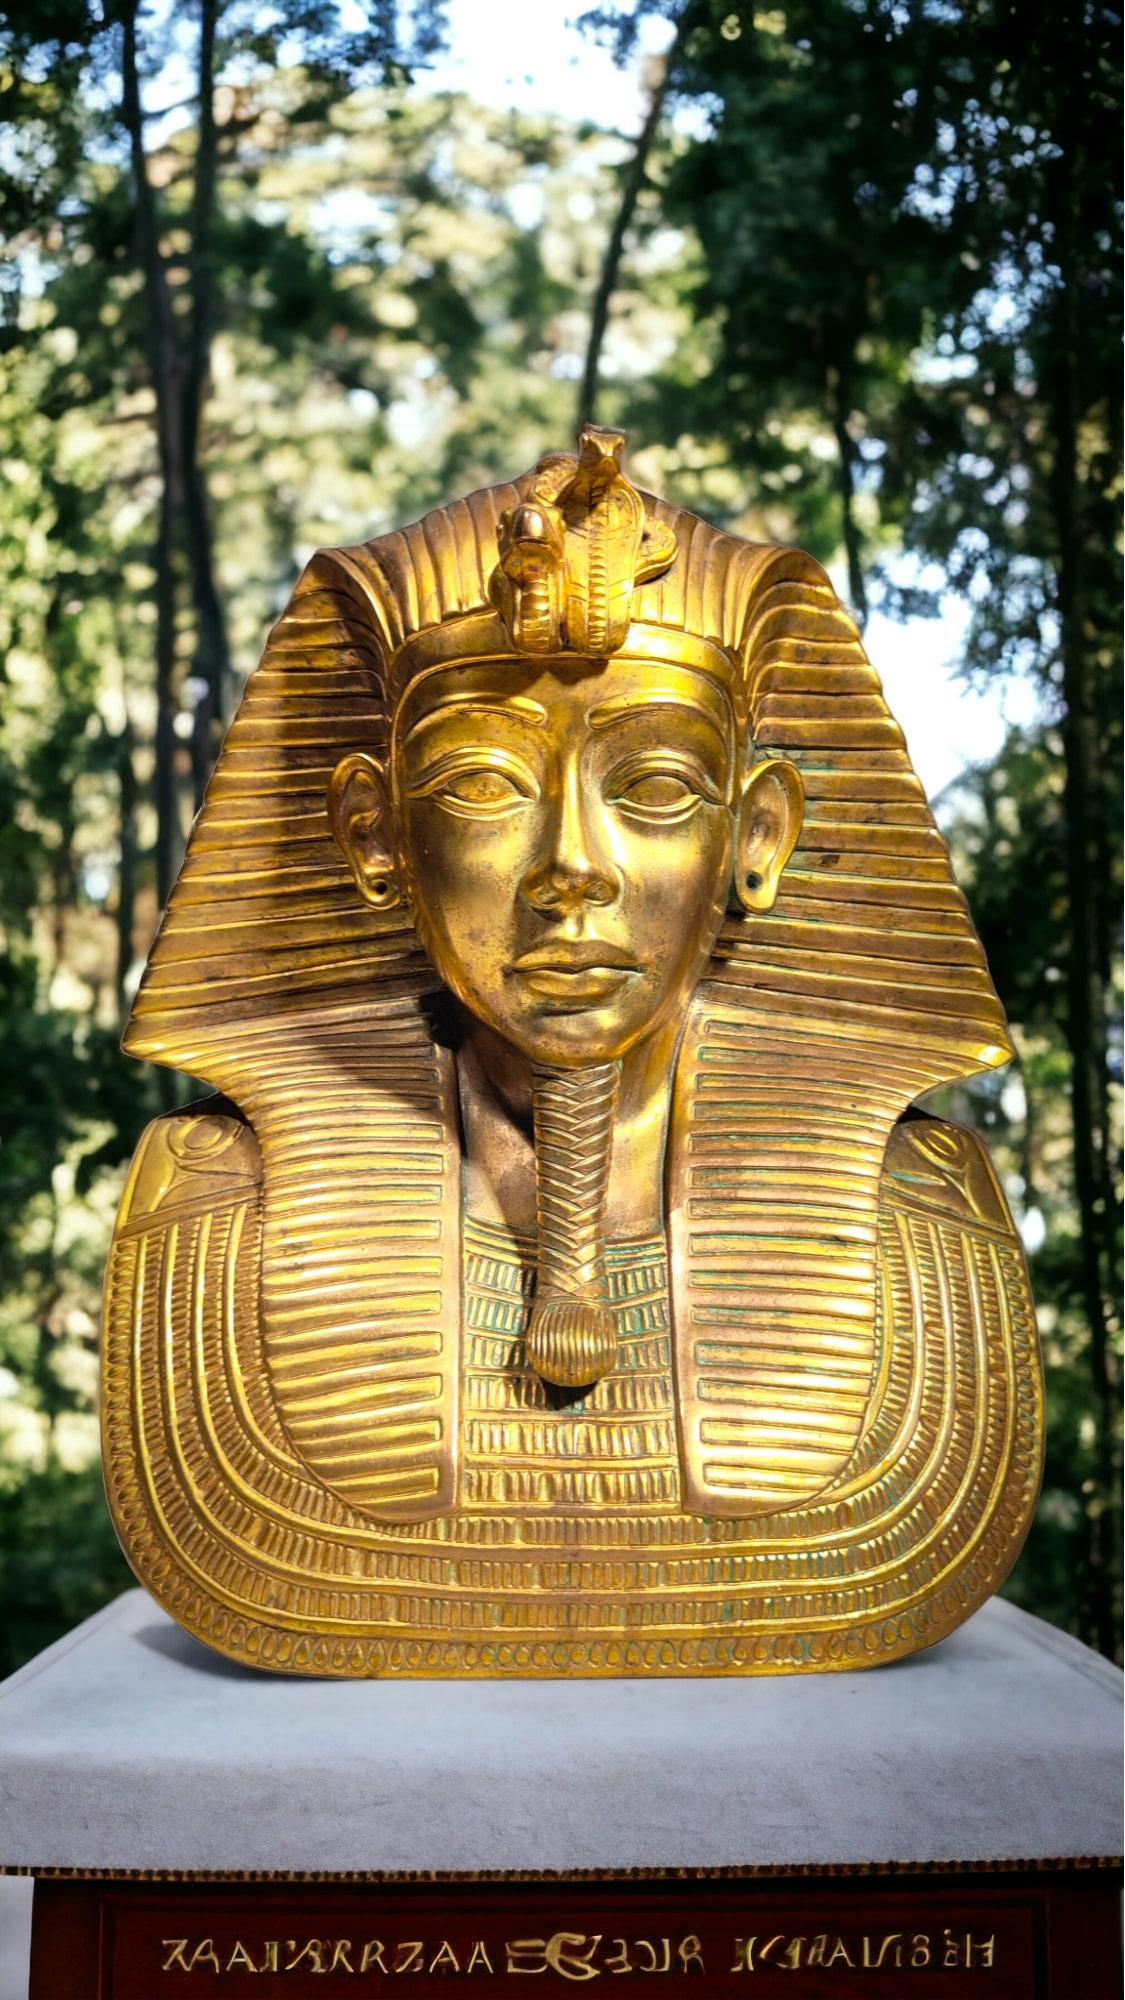 Buste de Toutankhamon en bronze
Buste décoratif de Toutânkhamon en bronze doré et ciselé. Très détaillé, il a travaillé sur toute la surface. En bon état. Dimensions : 40x30x20 cm